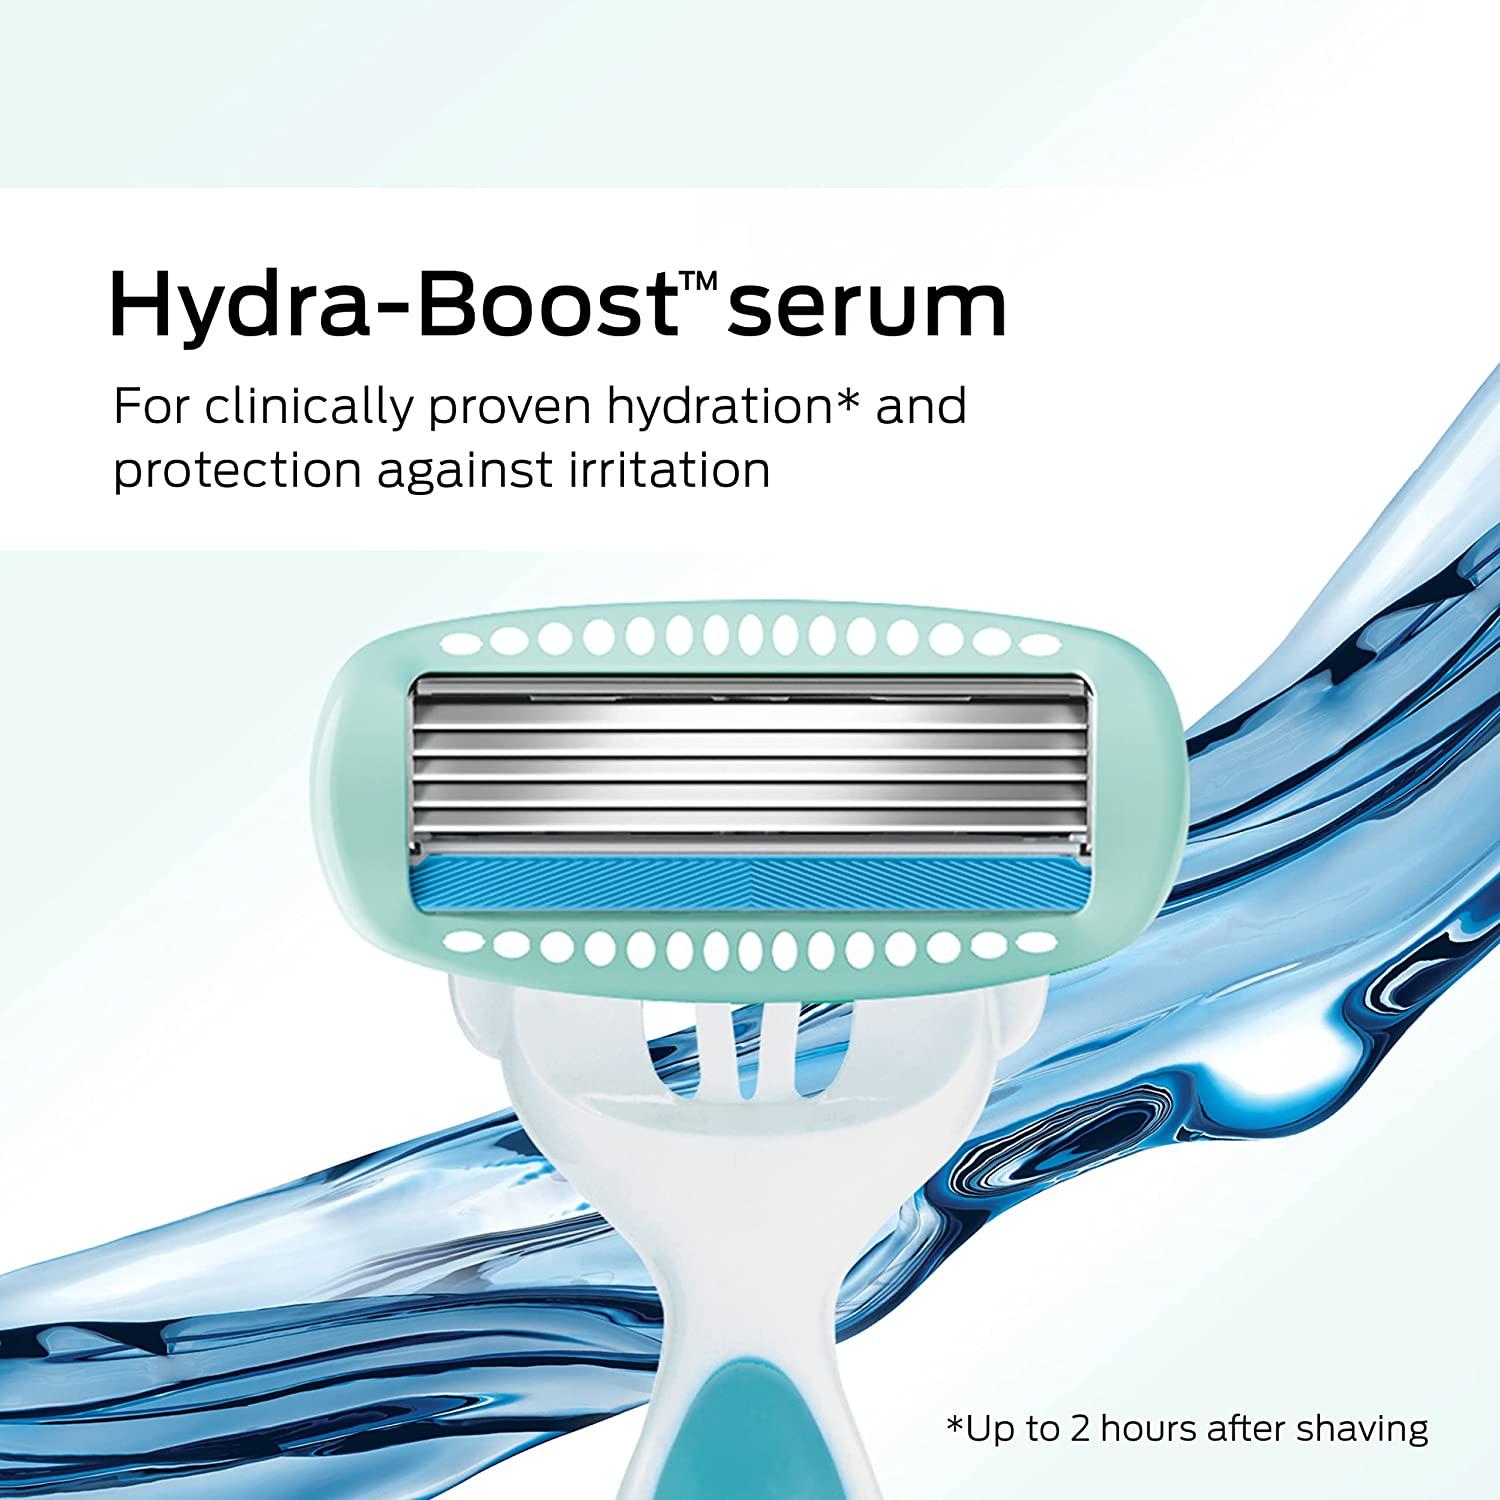 Hydro Silk® Sensitive Disposable Razor – Schick US